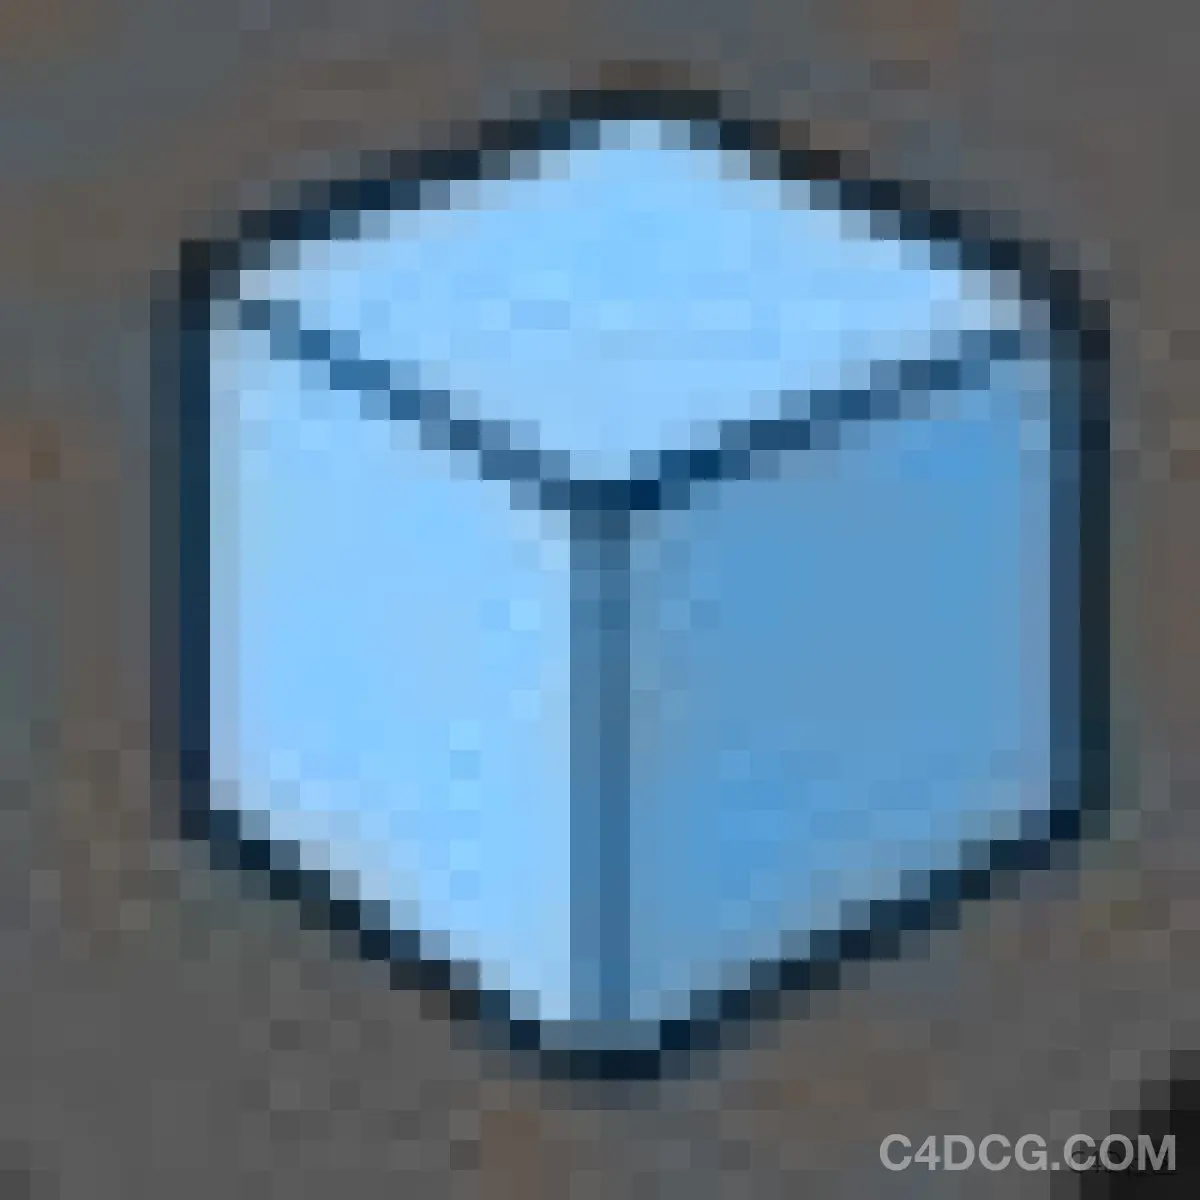 立方体对象